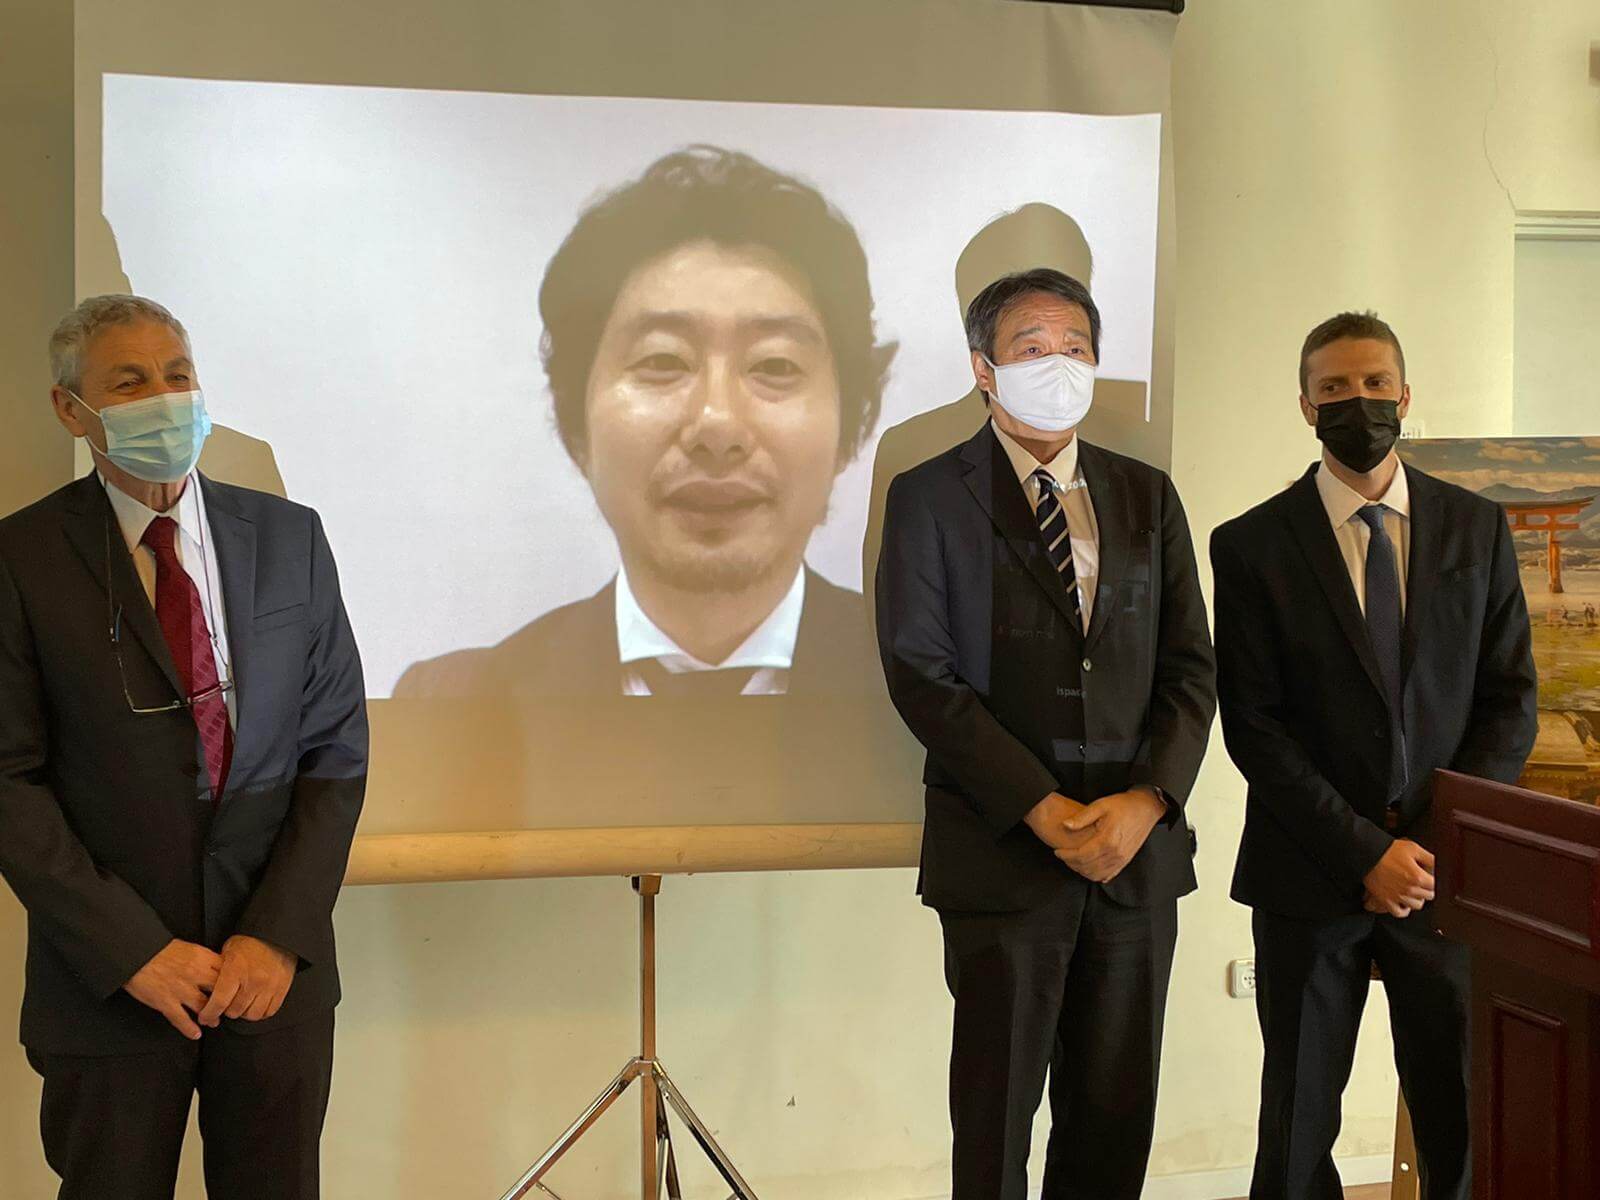 ארוע החתימה בשגירות יפן בישראל. צילום: שגרירות יפן בישראל